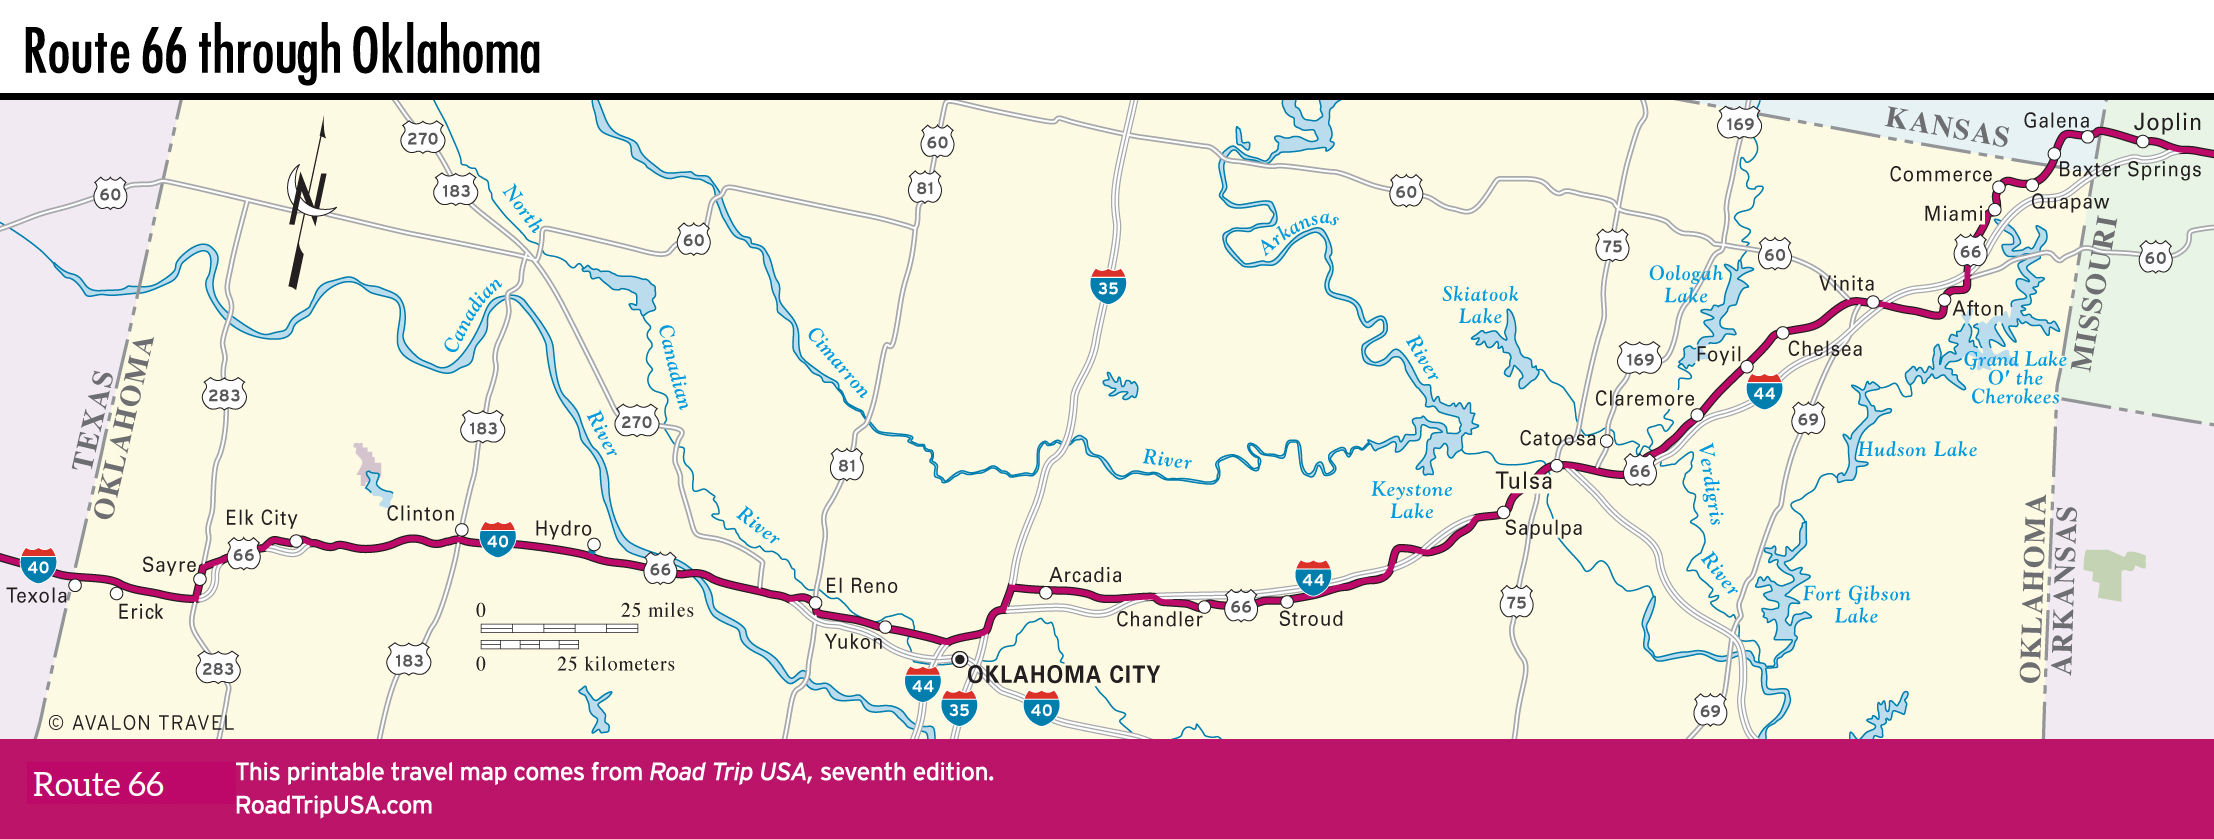 Map of Route 66 through Oklahoma.